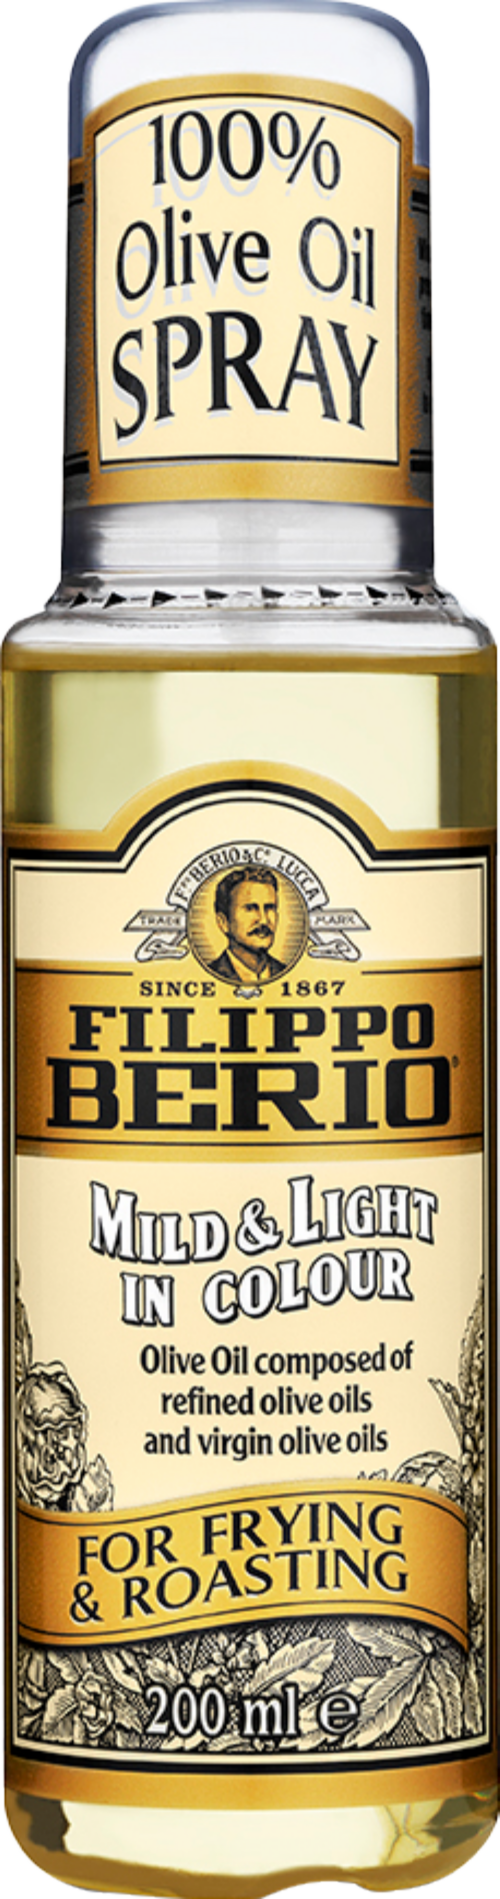 FILIPPO BERIO Mild & Light Olive Oil Spray 200ml